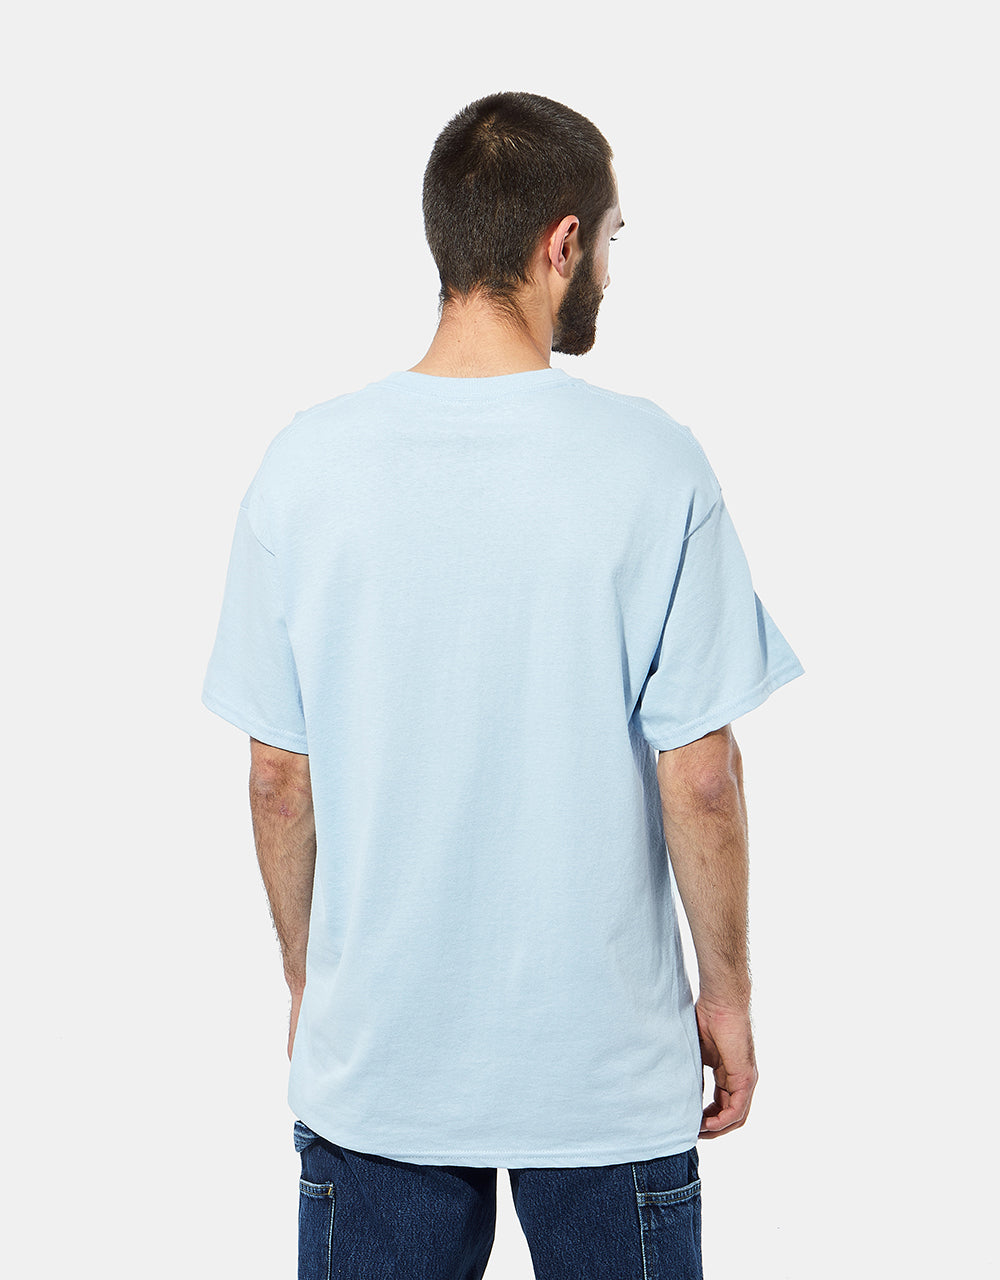 Krooked Sweatpants T-Shirt - Light Blue/Multi